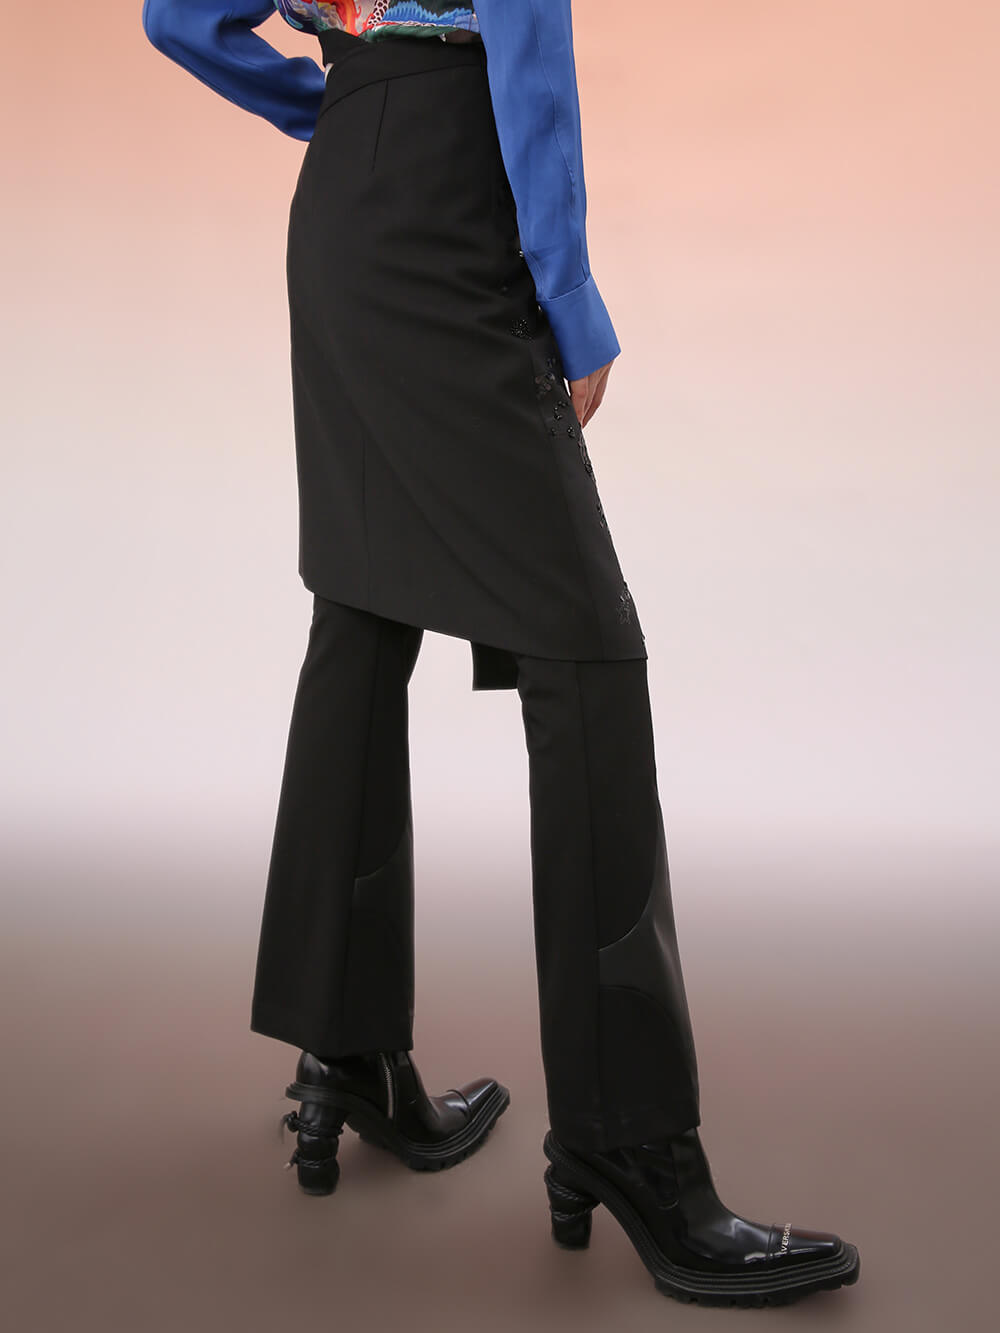 MUKZIN Mid-Length Asymmetric Black Skirt